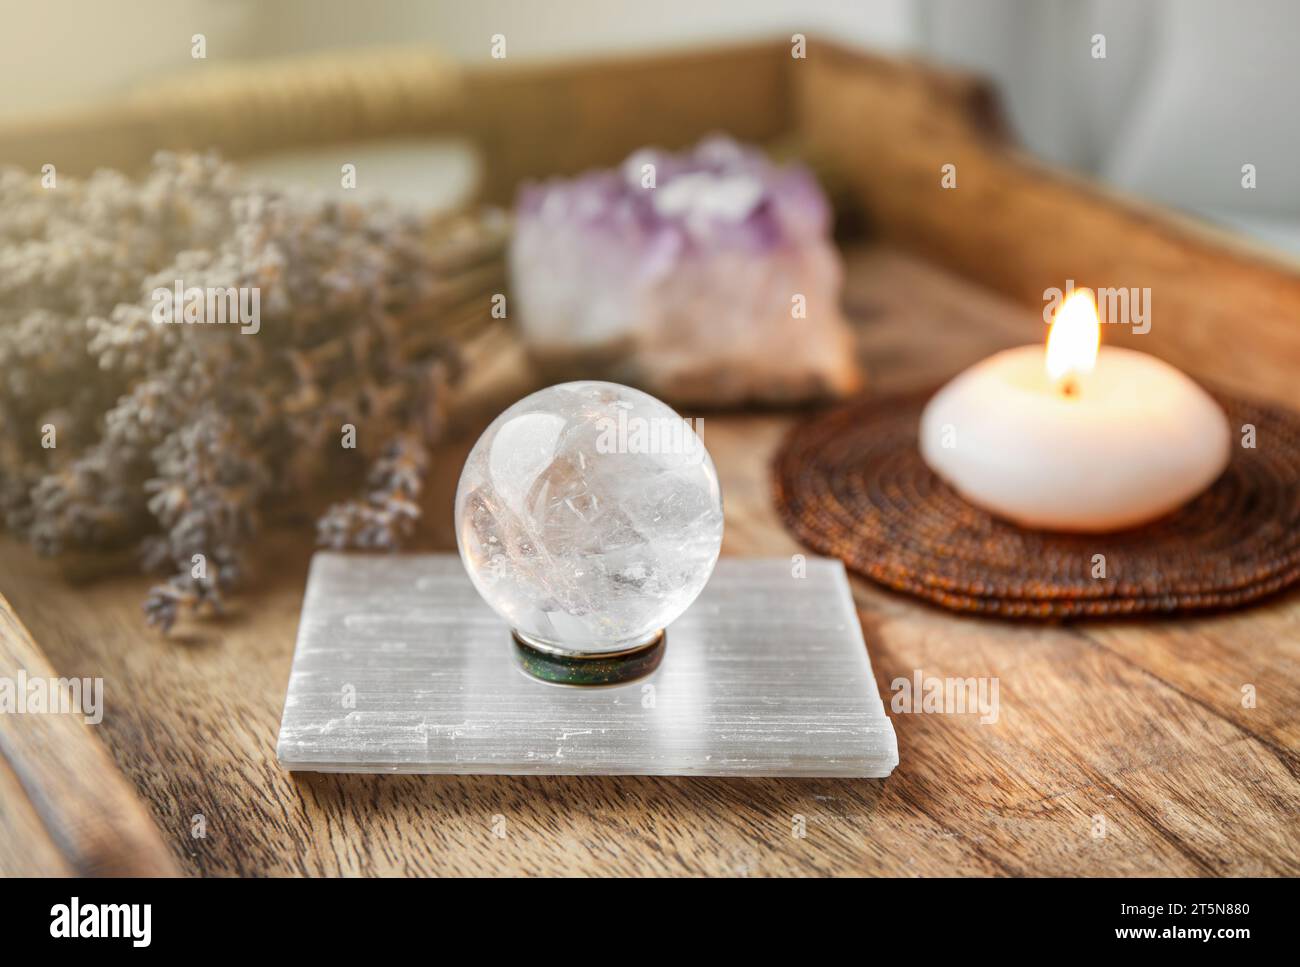 Edelsteinkugel oder Kristallkugeln, bekannt als Kristallkugel orbis und Orbuculum, ist das Leuchtfeuer der Ruhe und Harmonie in der häuslichen Umgebung. Stockfoto